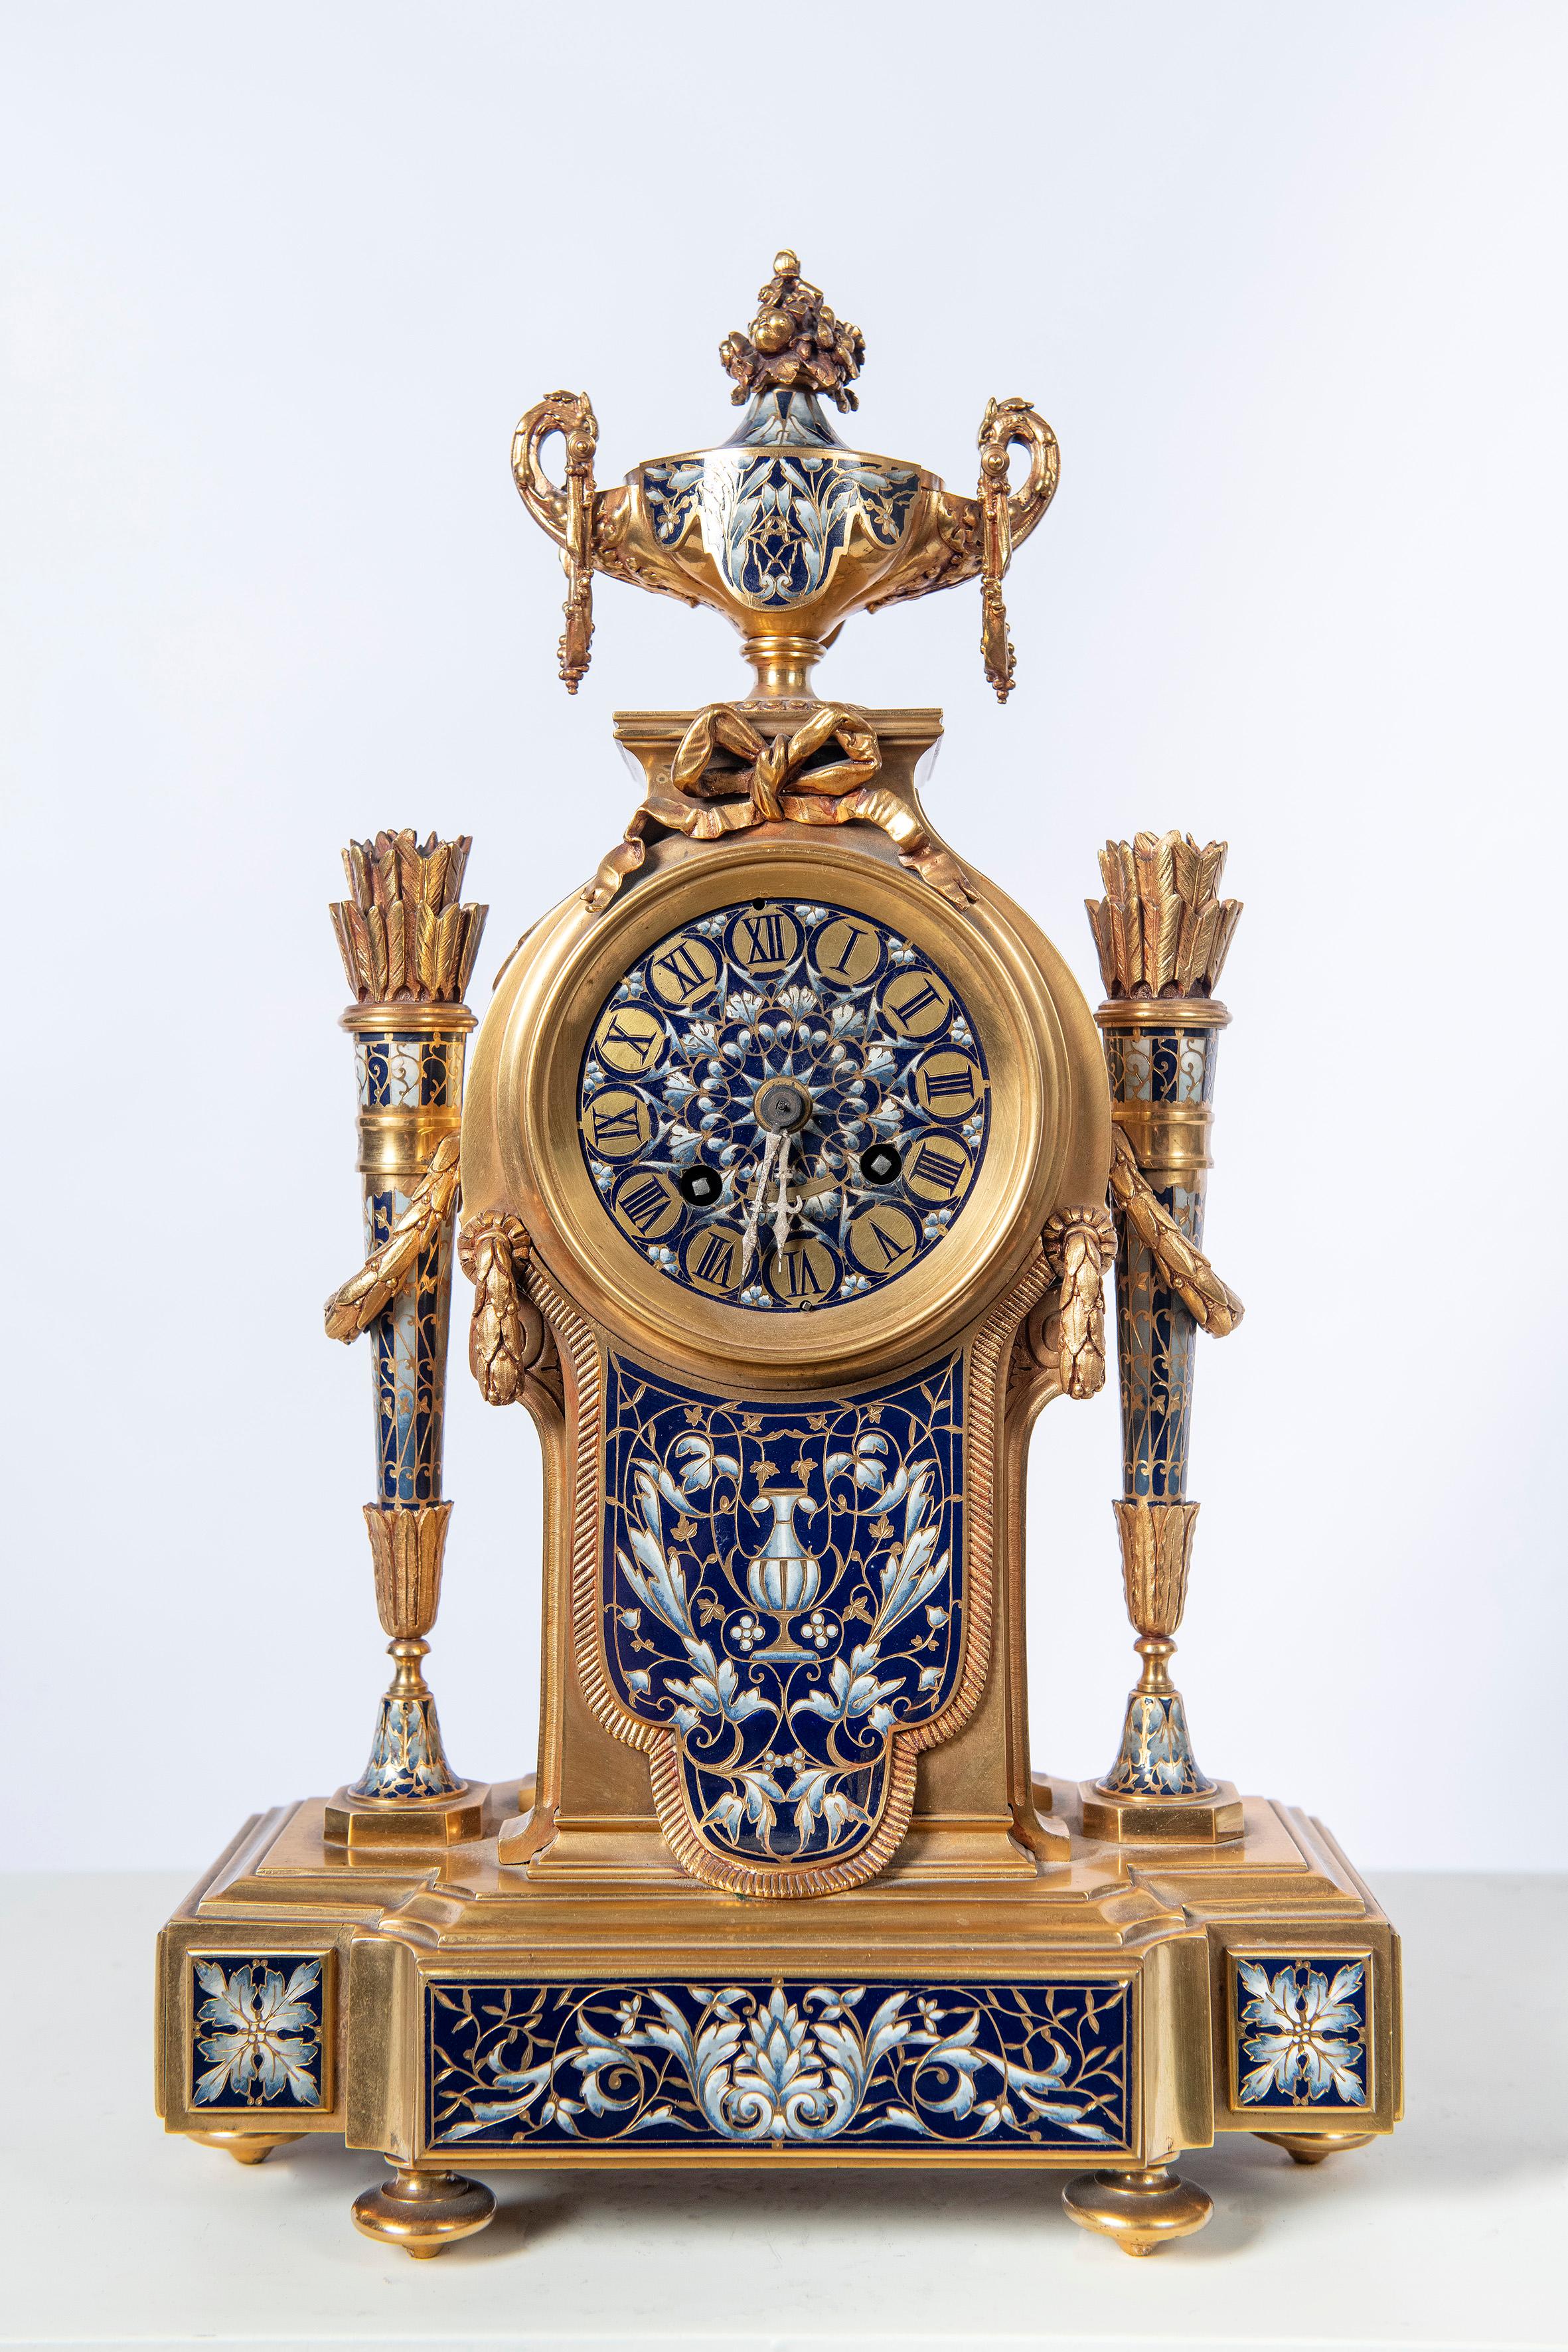 Goldbronze und Cloisonné-Garnitur, Frankreich, 19. Jahrhundert.
Die Uhr läuft.